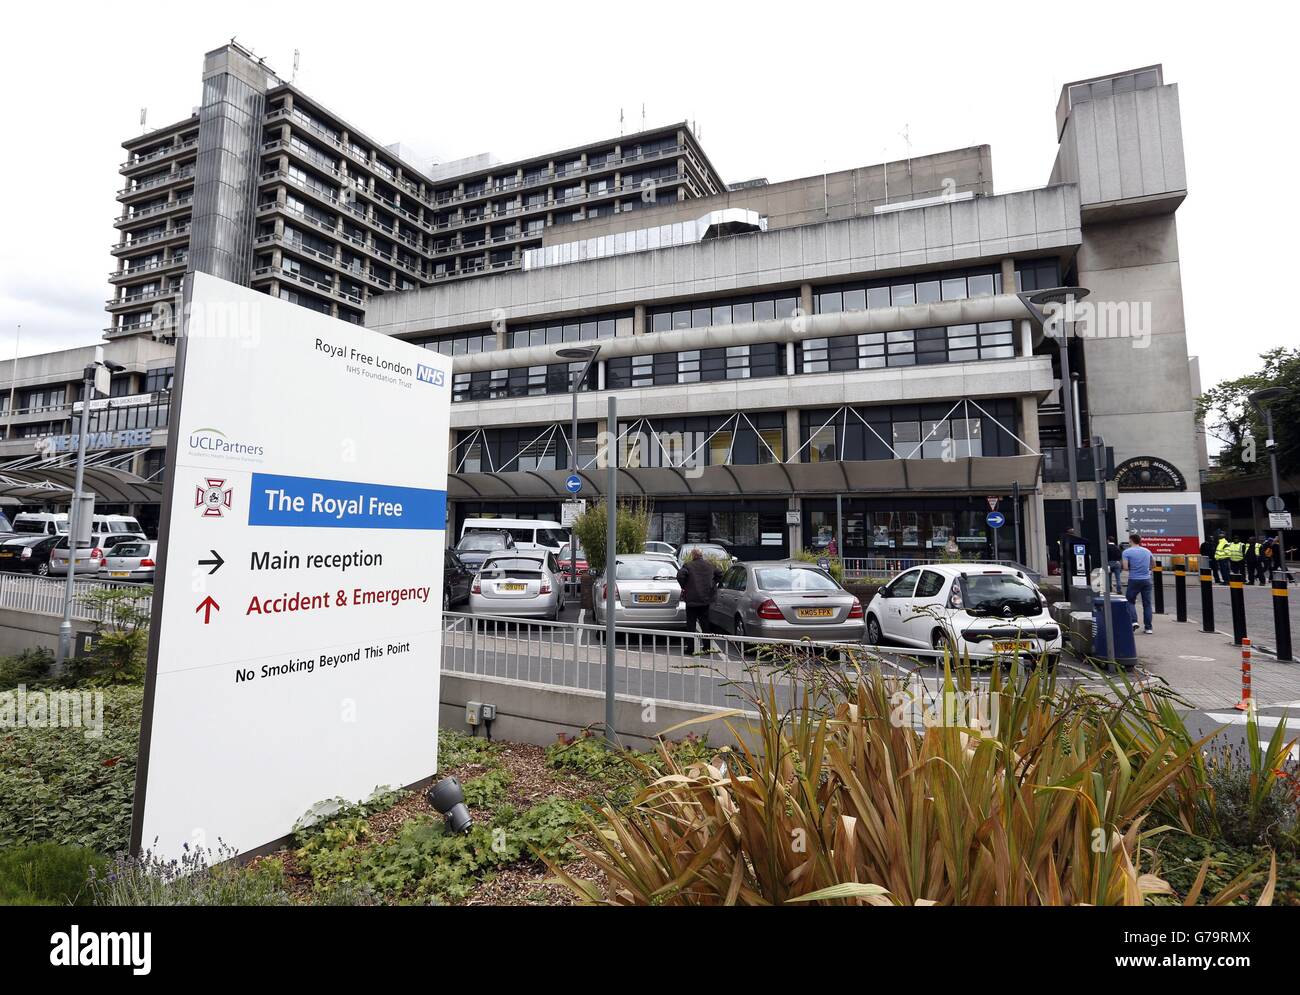 Una visión general del Hospital Real libre en Hampstead, Londres, donde hay un aparato de aislamiento de alto nivel en la Unidad de Enfermedades Infecciosas de Alta Seguridad. Foto de stock